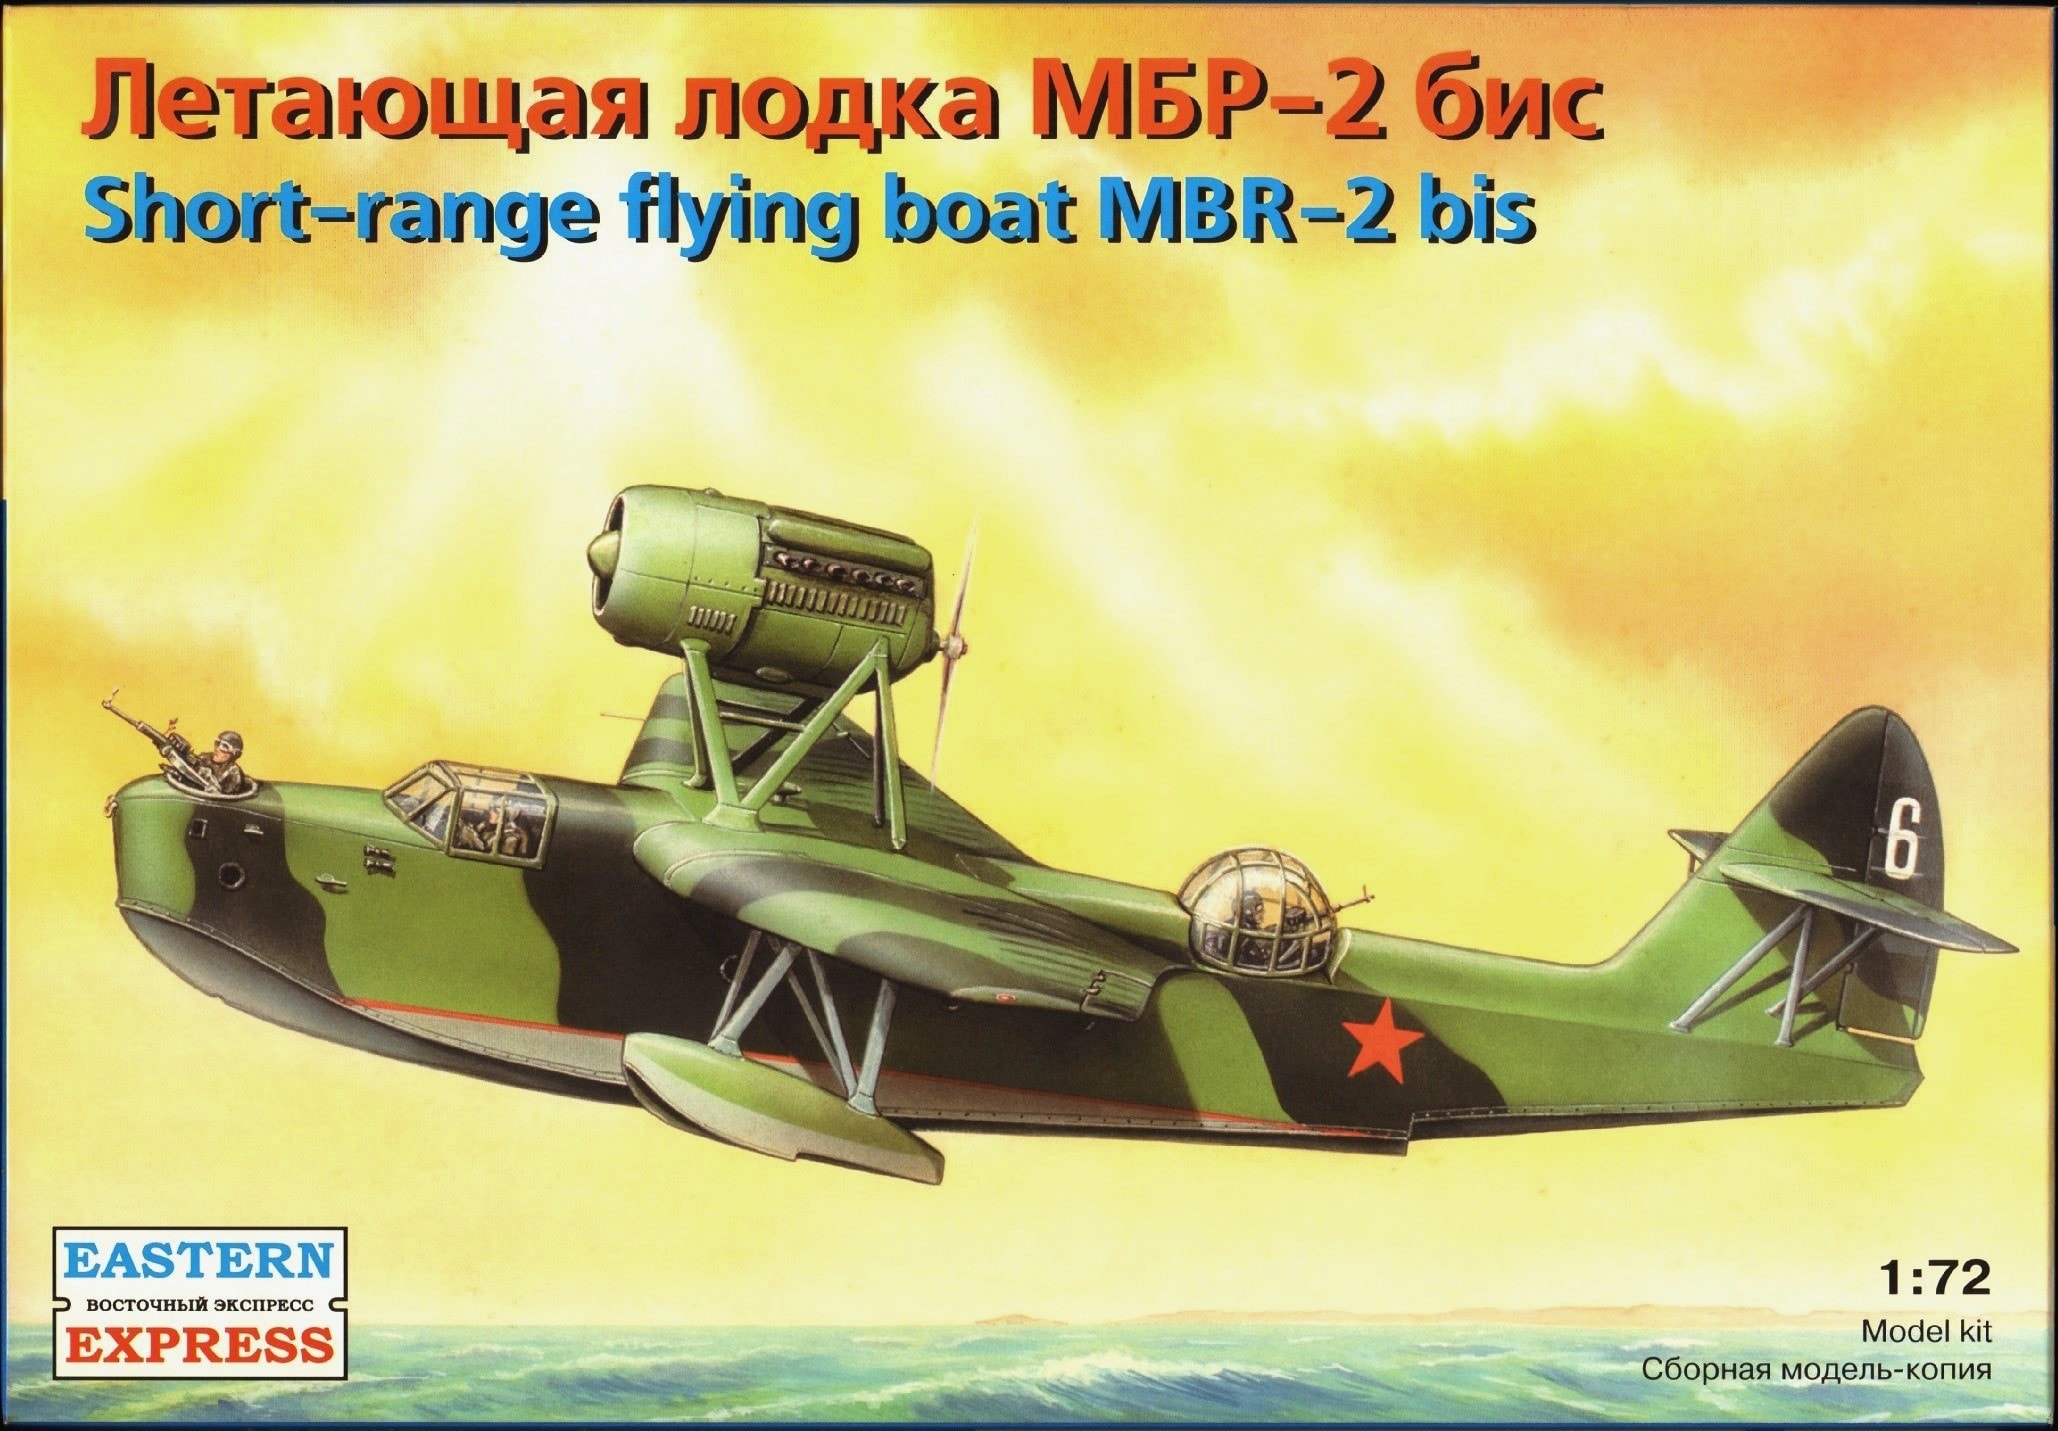 Short-range flying boat MBR-2 bis